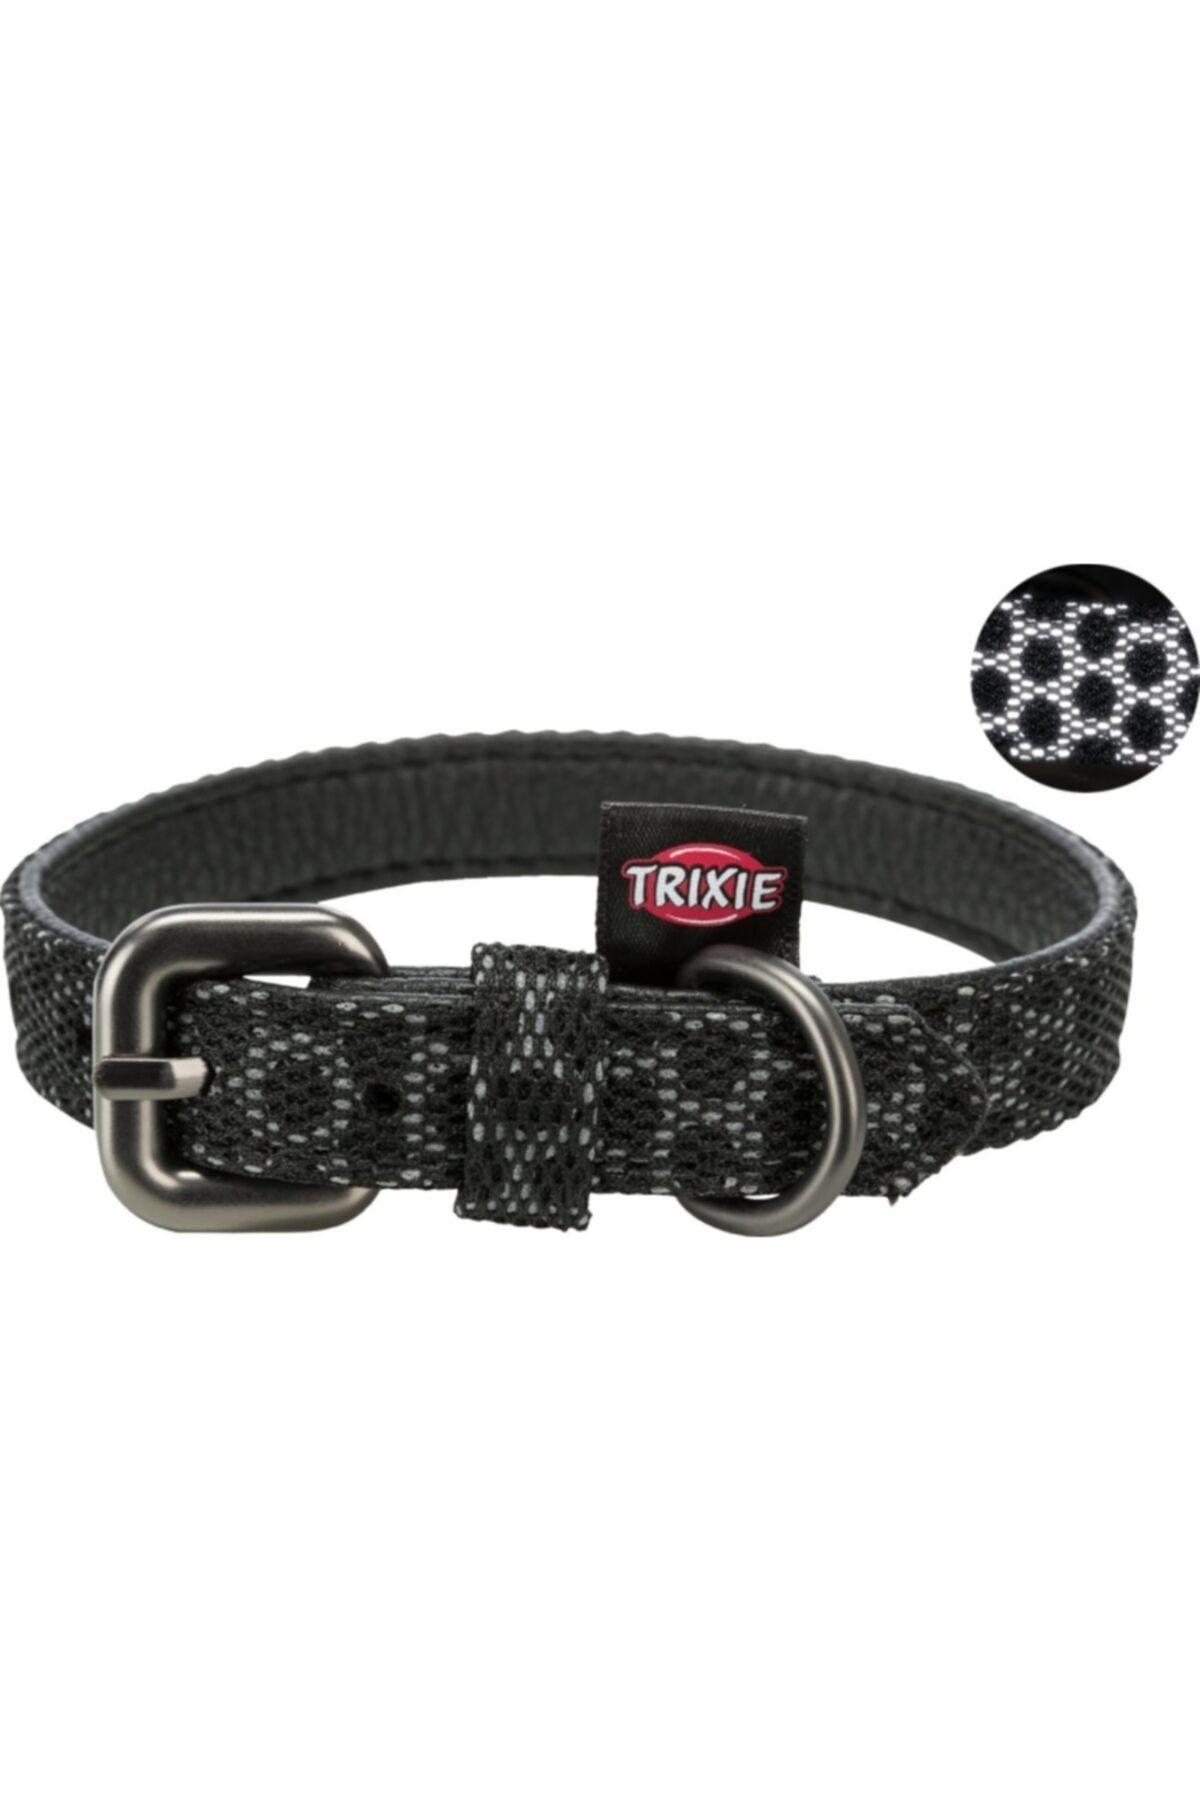 Trixie Köpek Boyun Tasması, Reflektörlü, Xs-s:22-30cm/15mm, Siyah